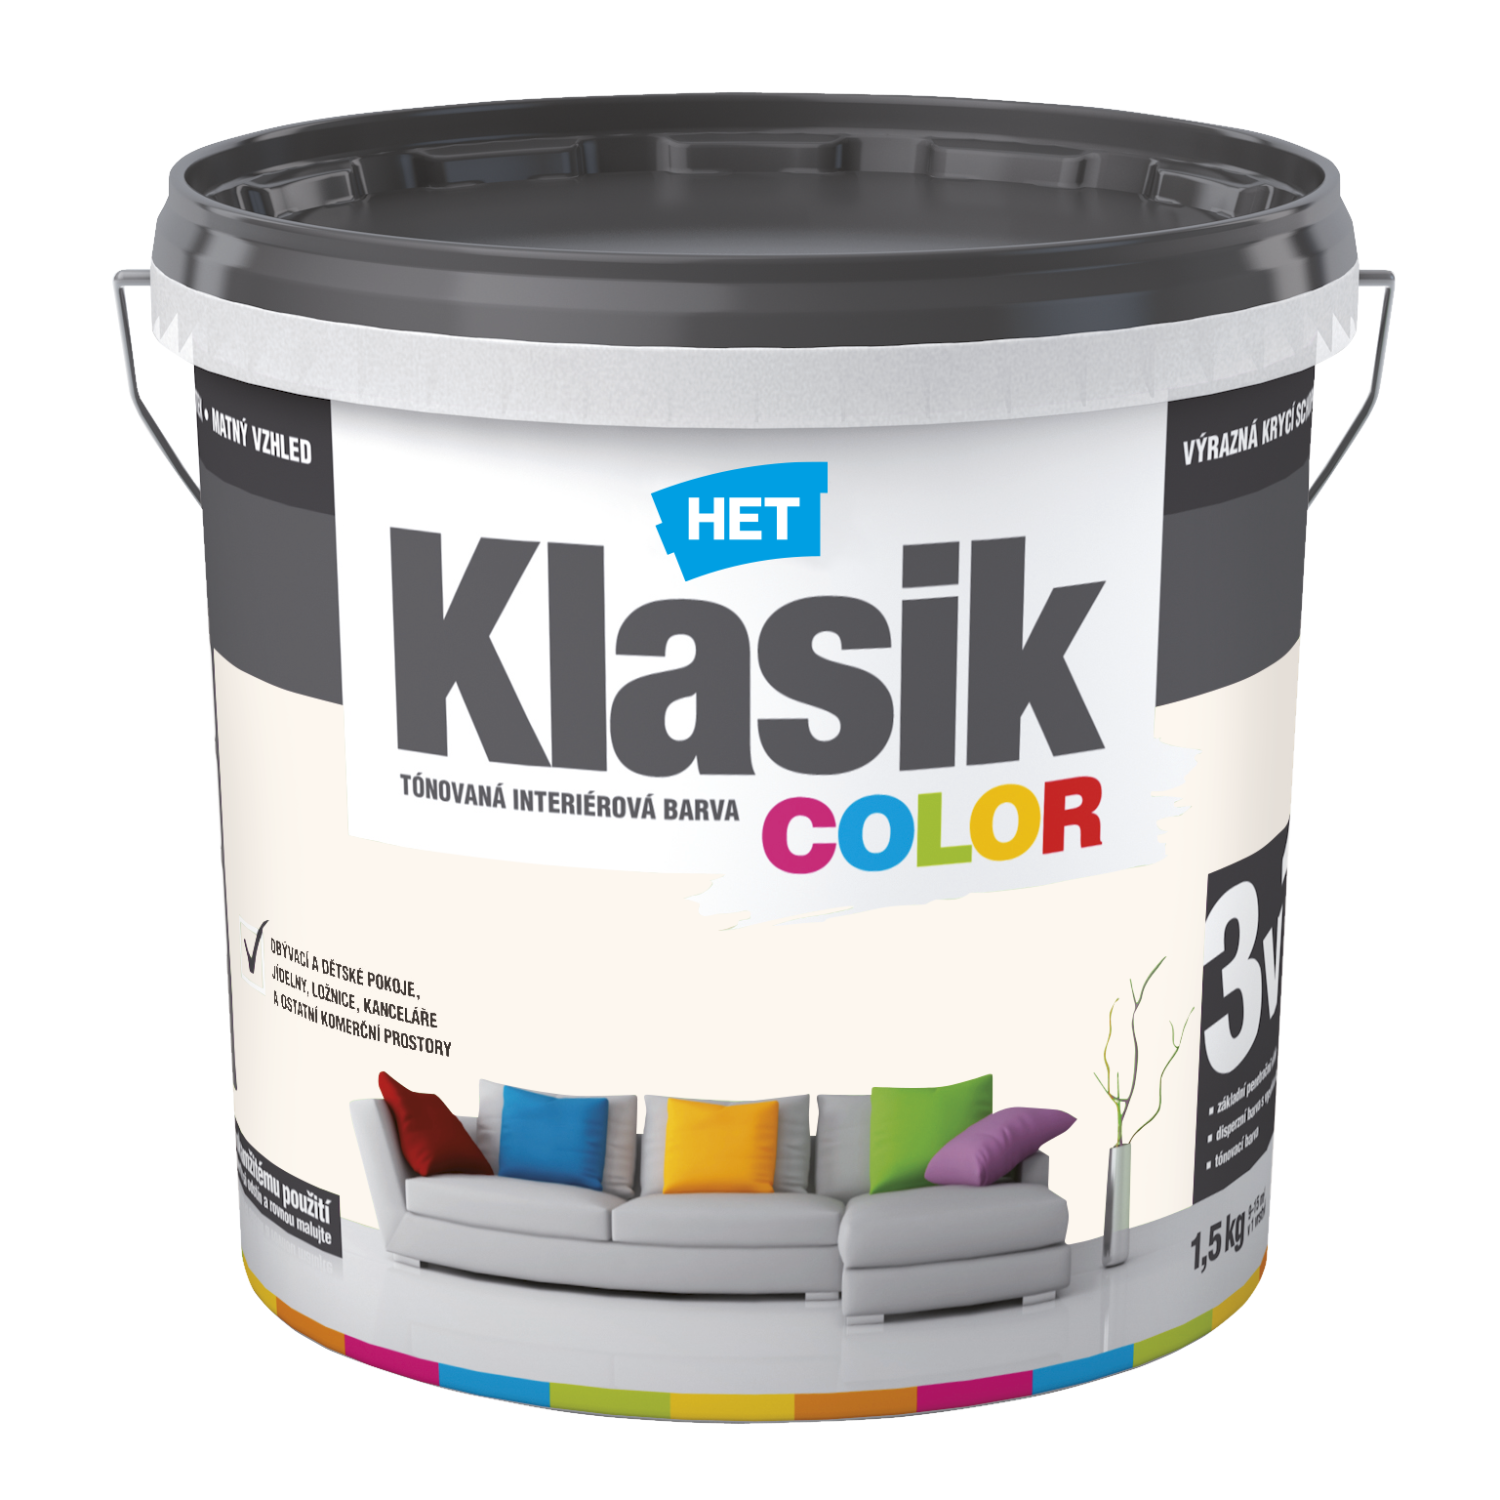 HET Klasik COLOR tónovaná interiérová akrylátová disperzná oteruvzdorná farba 1,5 kg, KC0218 - béžový pieskový